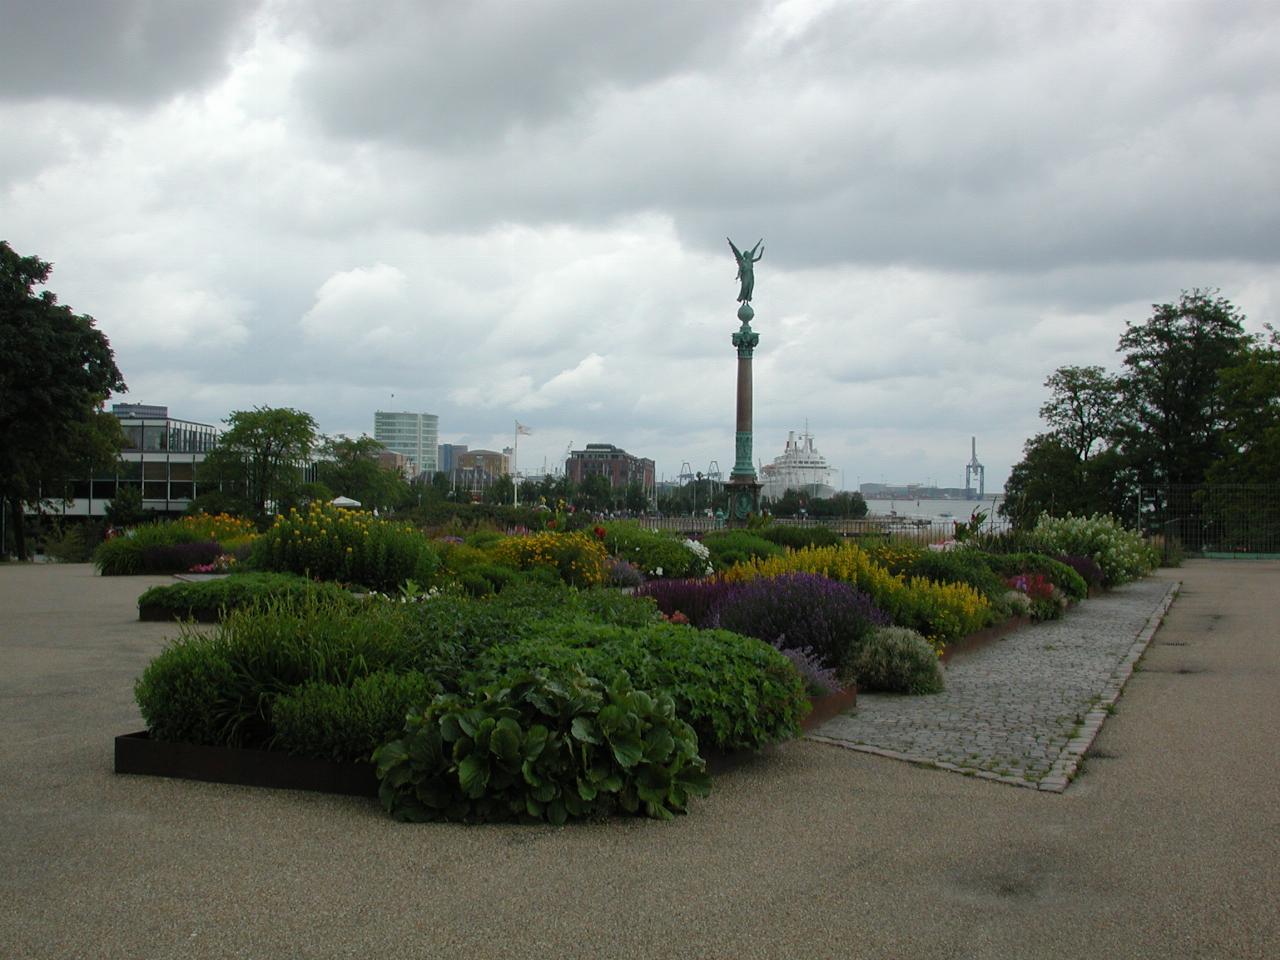 KPLU Viking Jazz: Attractive garden near statue on waterfront walk from 